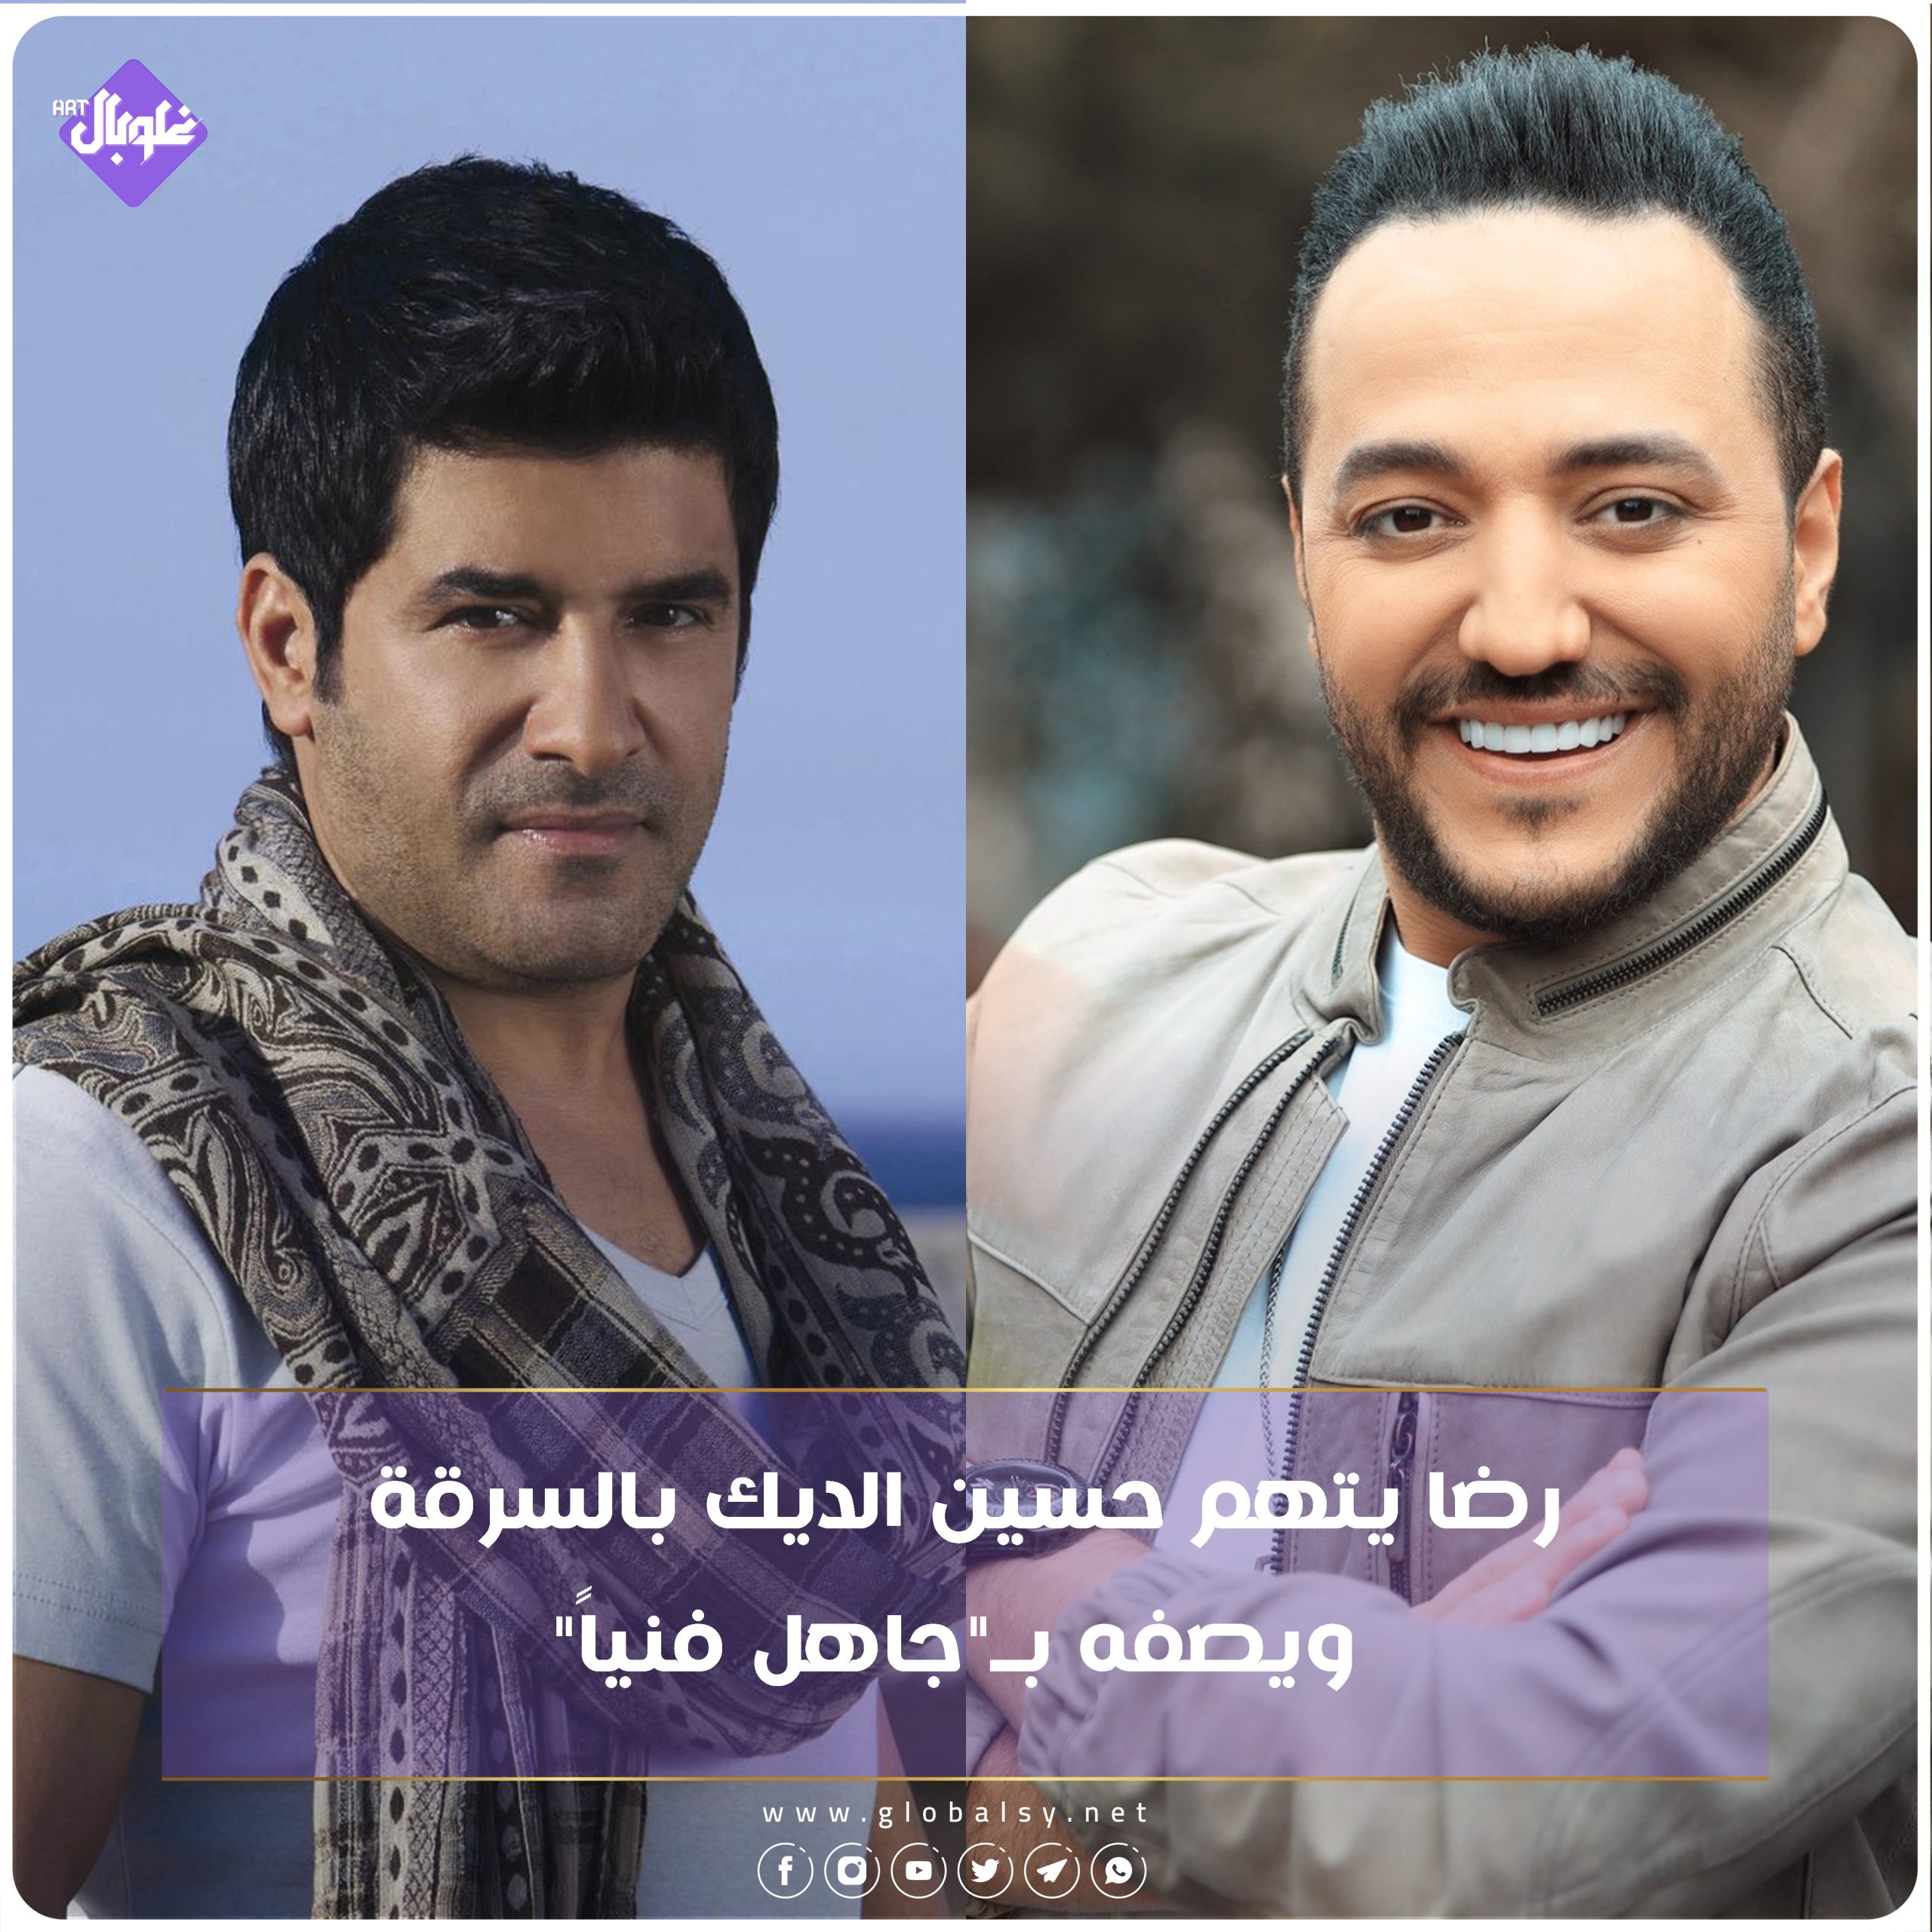 النار تستعر بين الممثل اللبناني رضا وحسين الديك